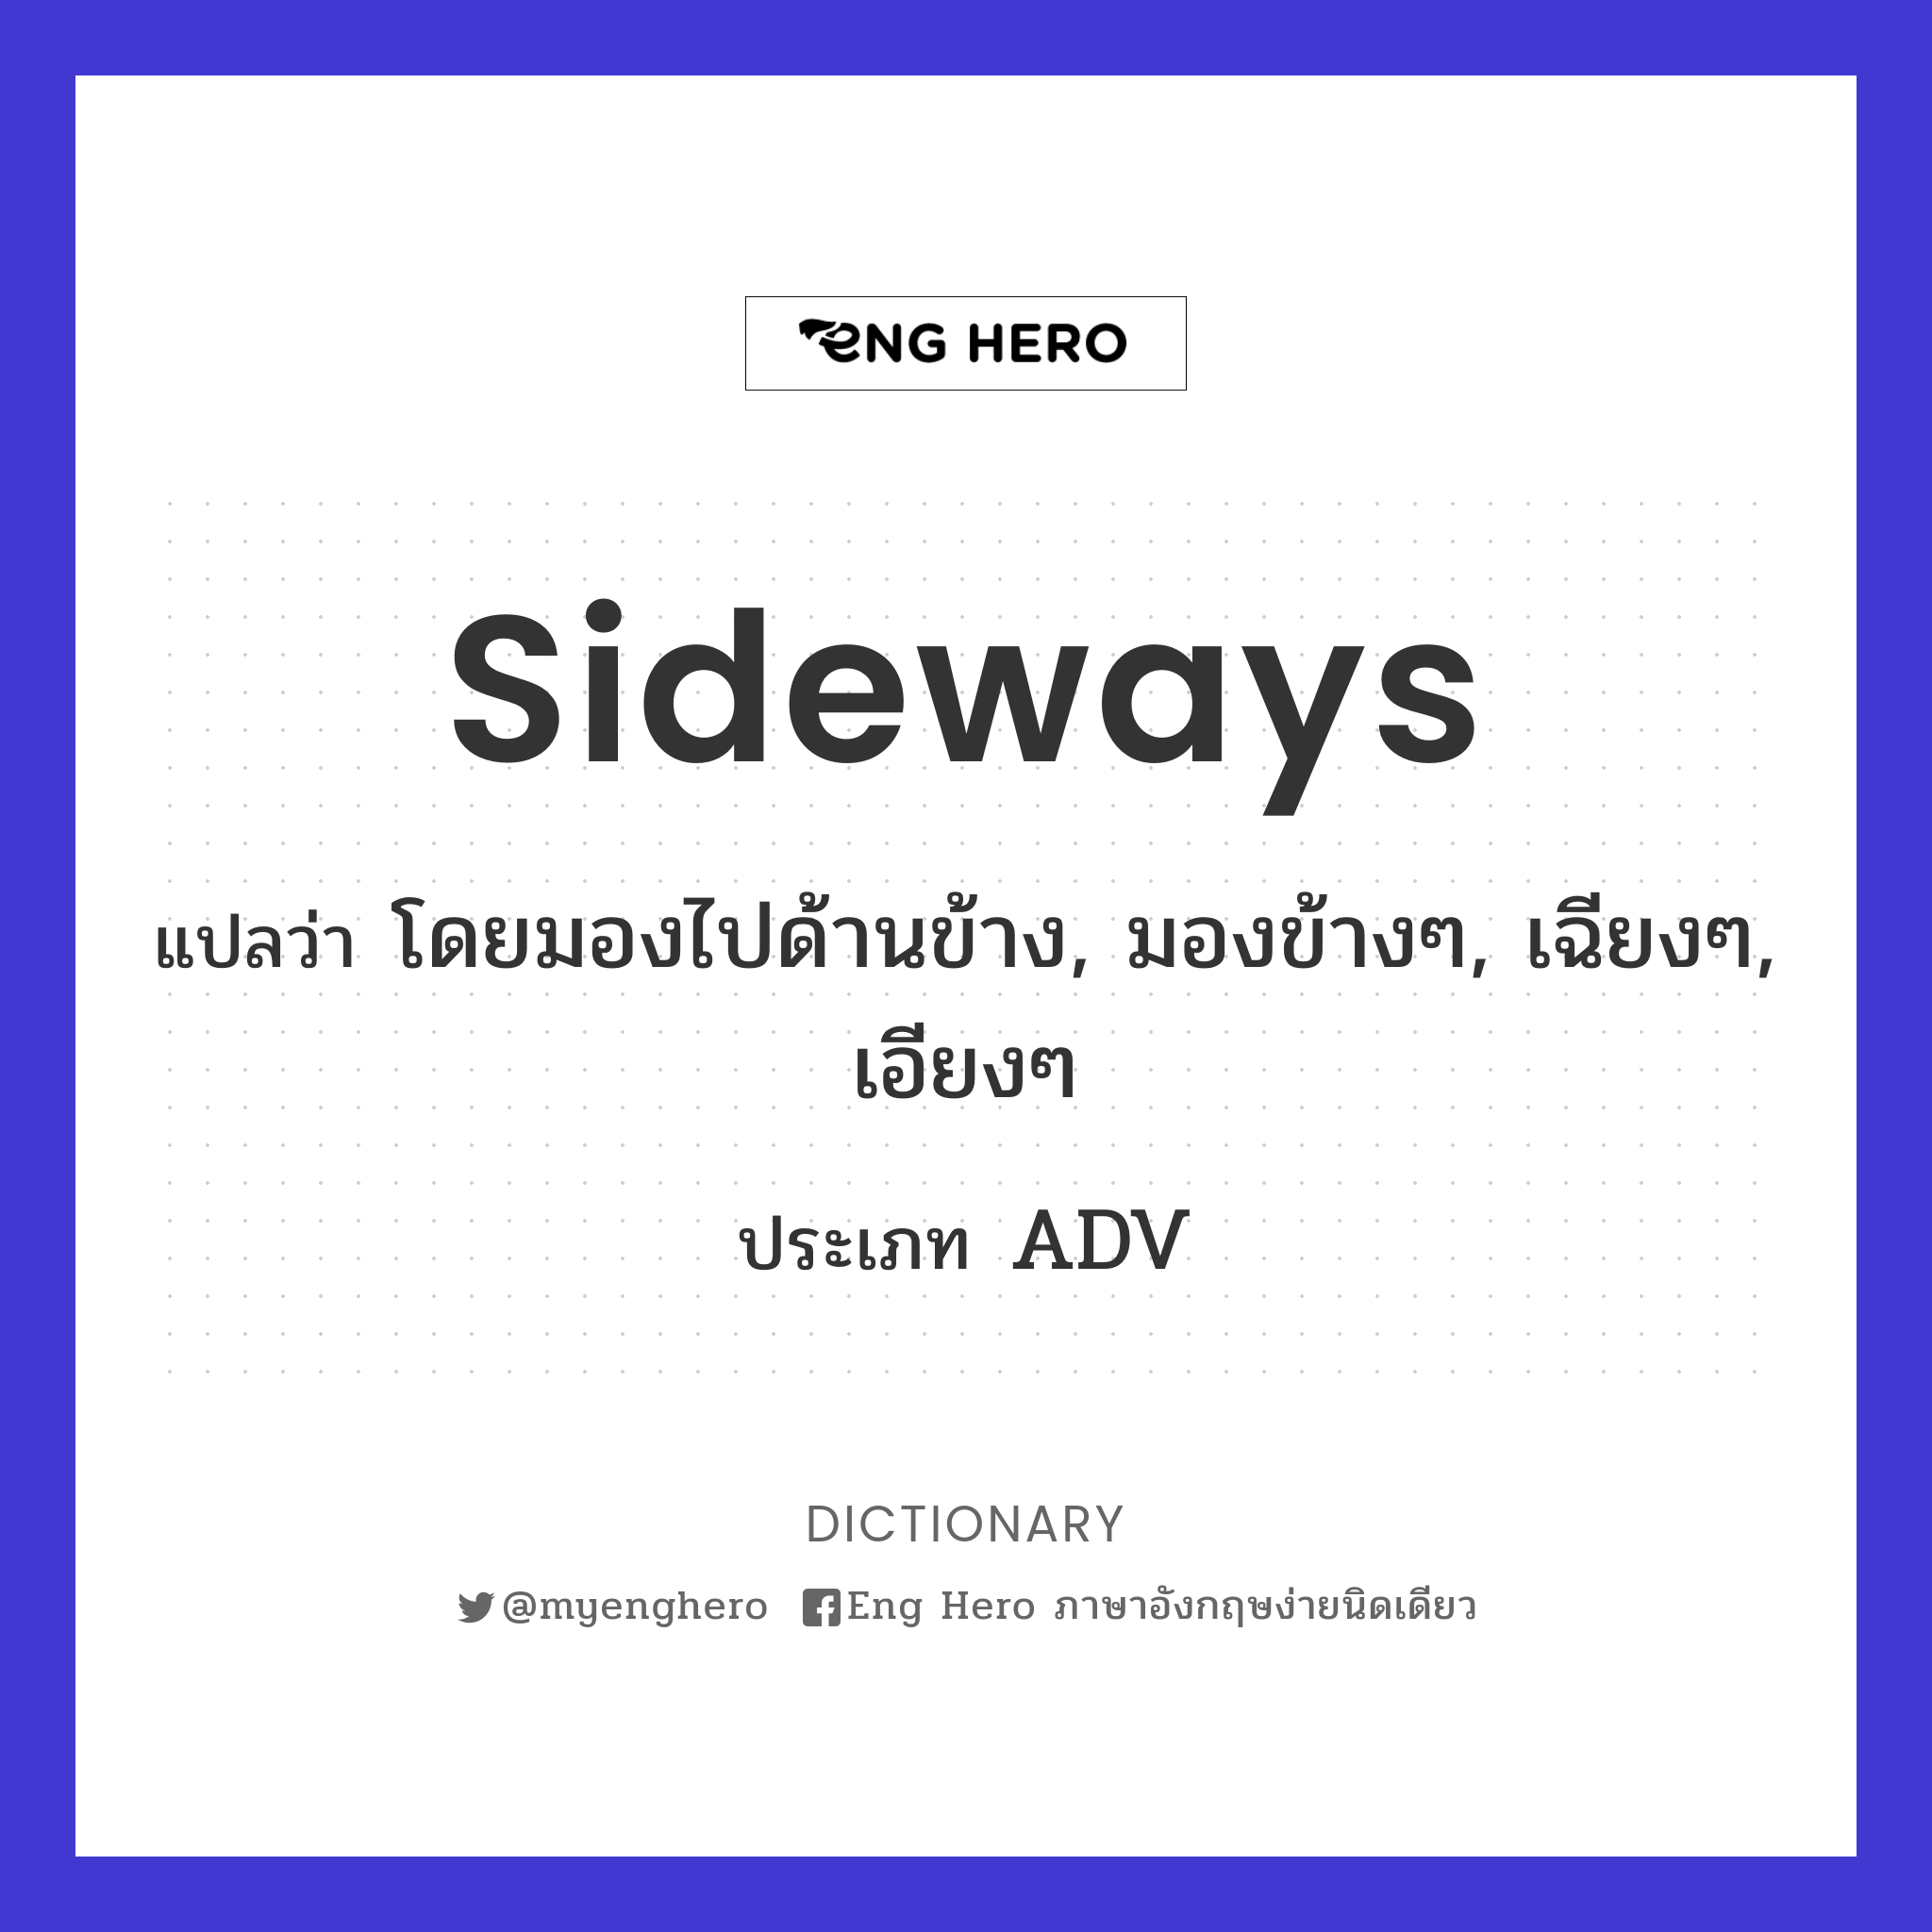 sideways